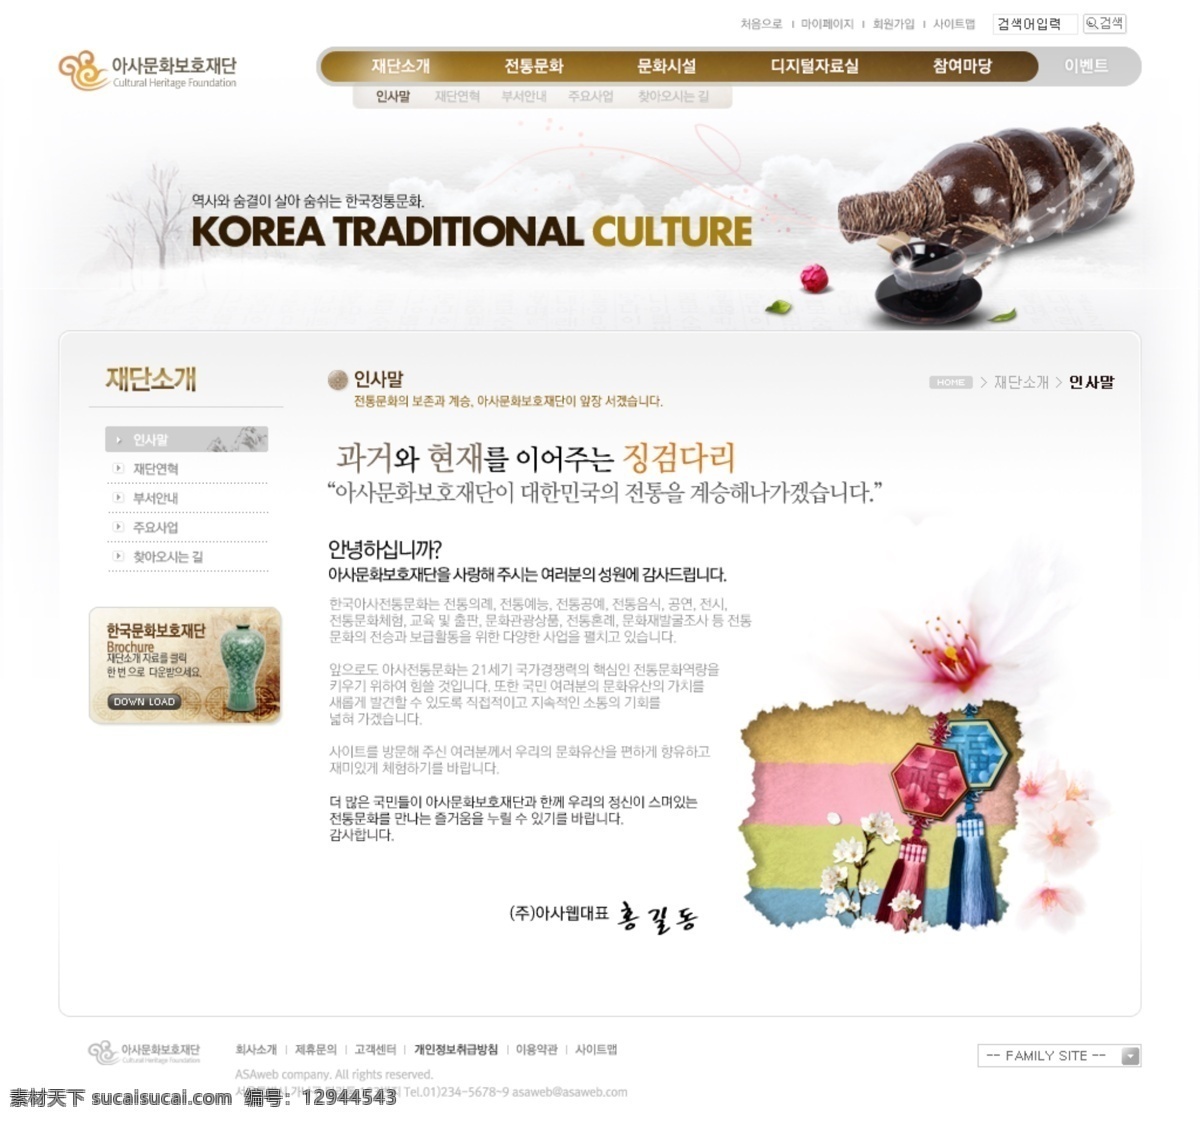 韩国 网站 韩国素材 韩国网页 网页模版 网页设计 网页素材 棕色 韩国文化风情 棕色网站 网页模板